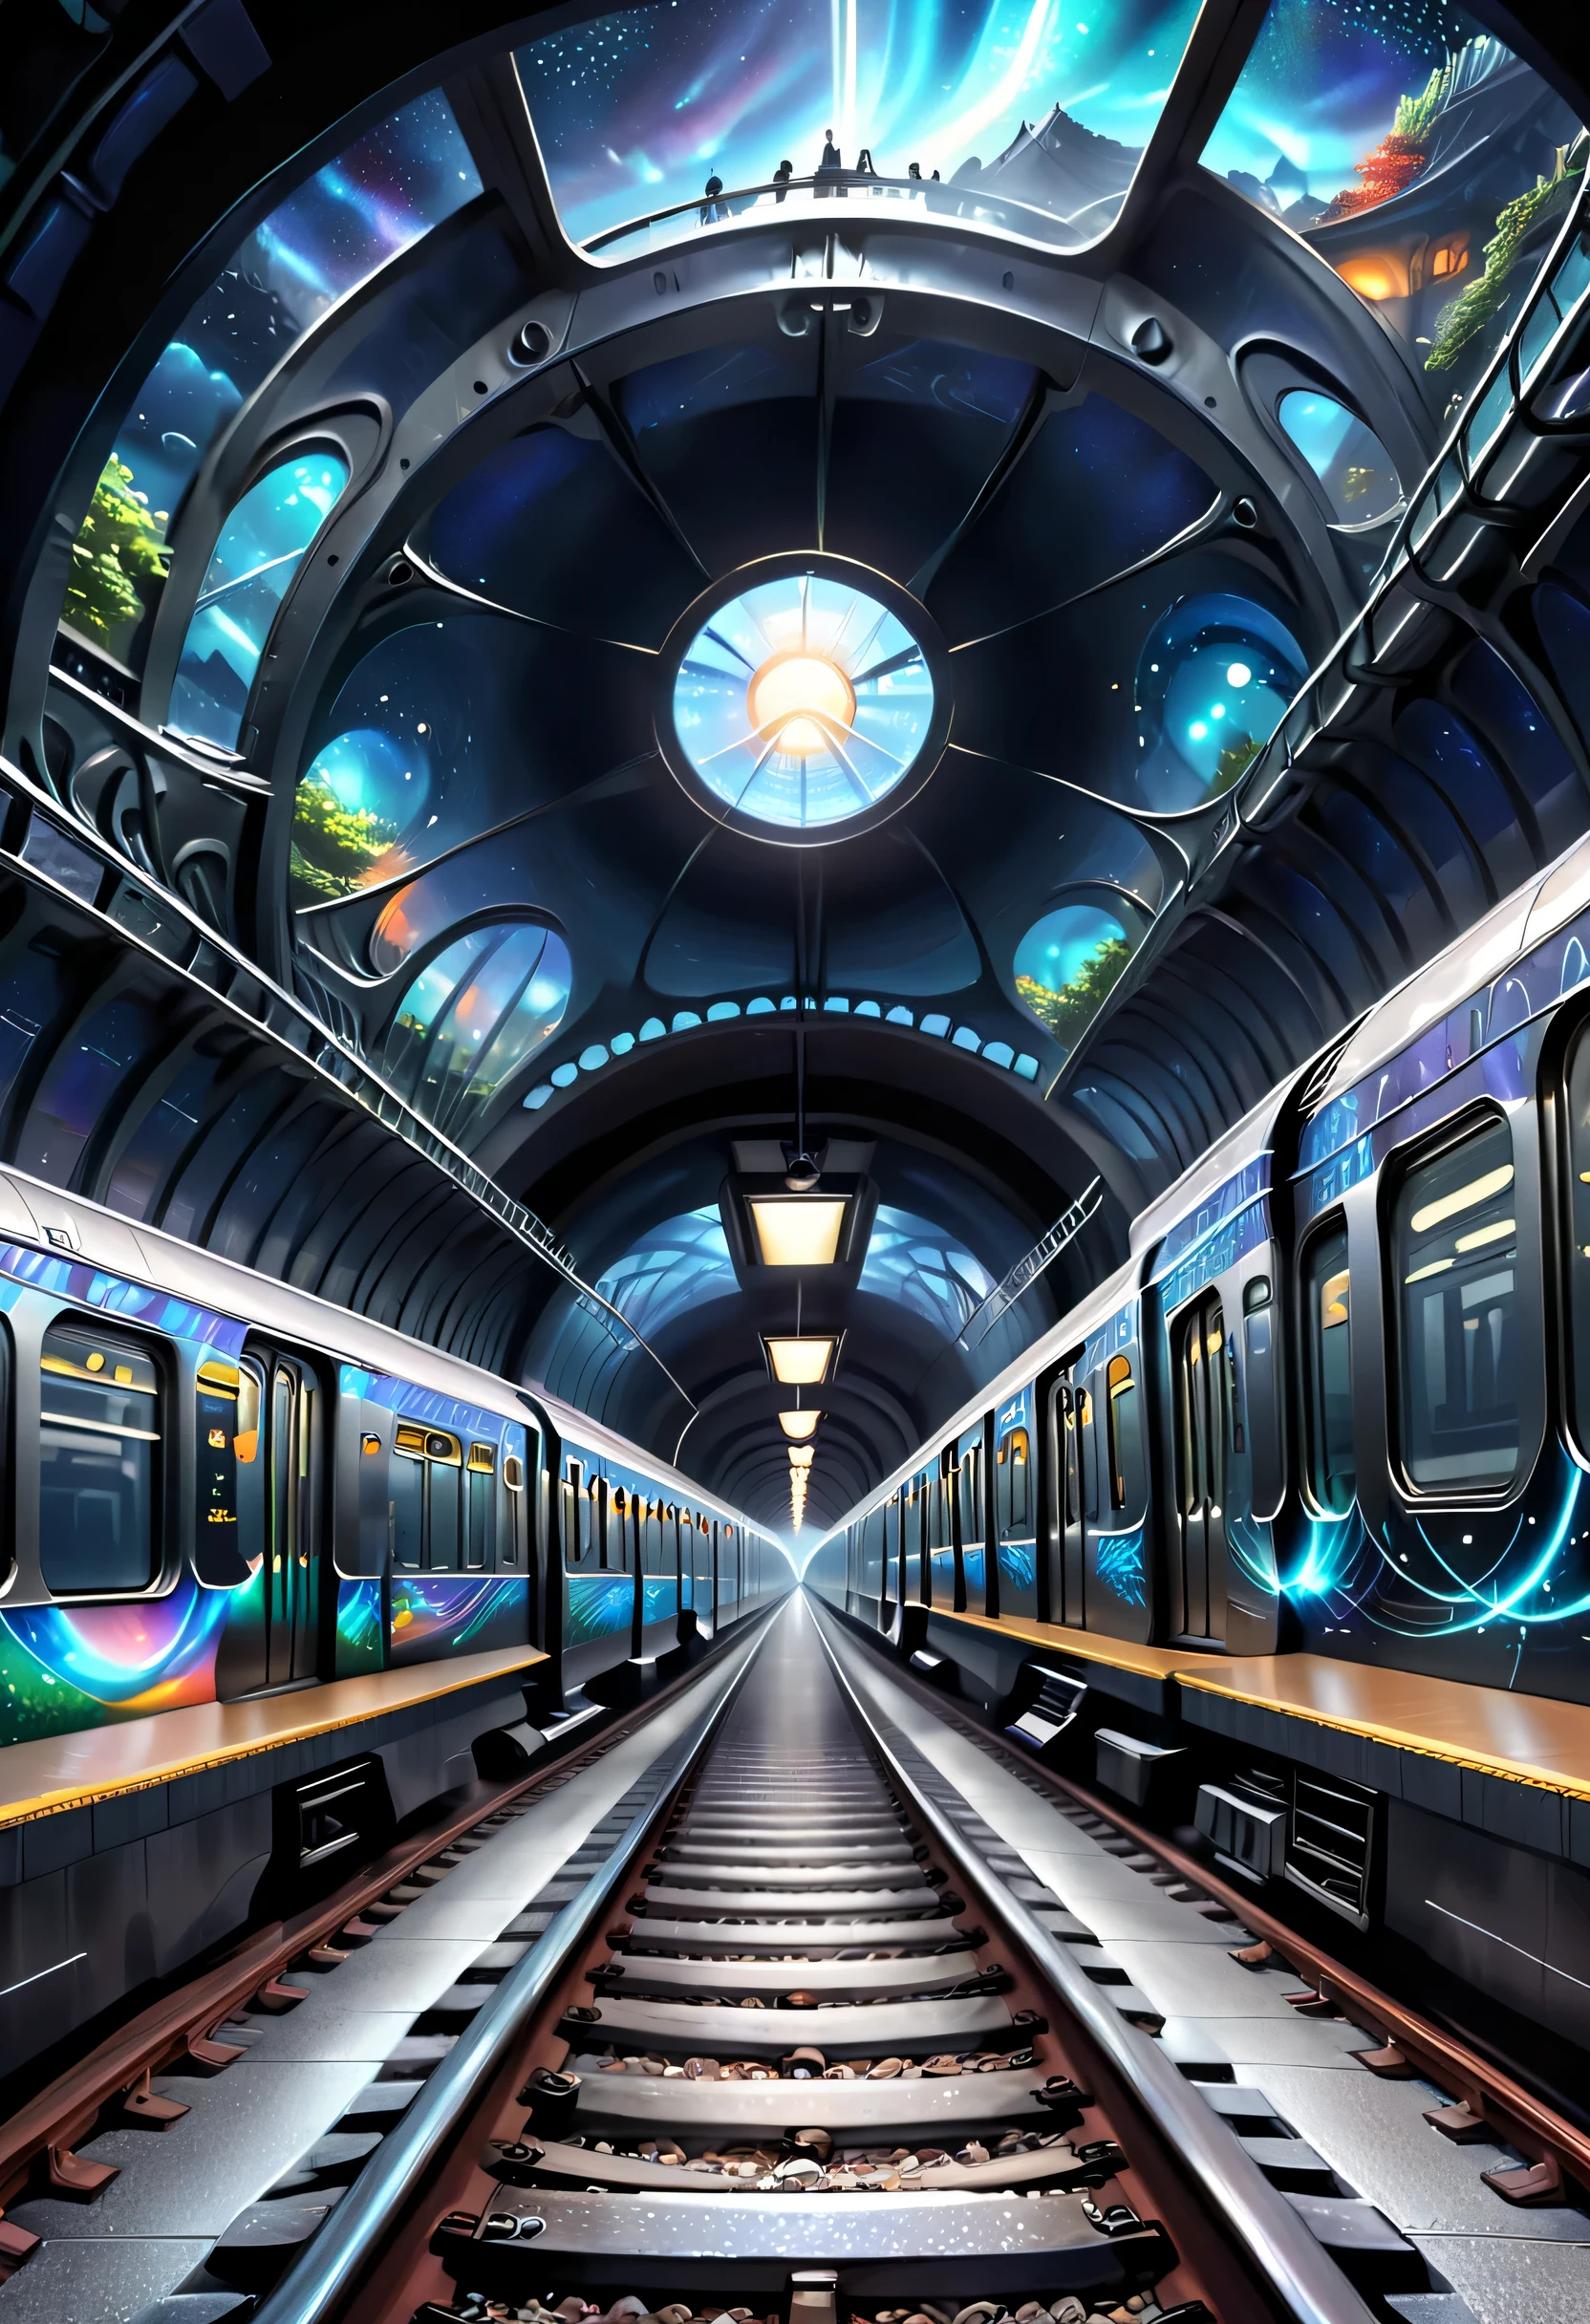 지하철 선로가 다른 차원의 공간으로 연결되는 모습을 묘사합니다.。지하철 터널도 그릴 수 있어요，섹션 중 하나는 다른 차원의 세계로 연결됩니다，일러스트레이션은 다양한 차원의 독특한 풍경과 신비로운 비전과 승객을 보여줄 수 있습니다.。스타돔 열차는 정상 세계와 다른 차원 사이의 통로 역할을 합니다.，신비롭고 매혹적인 분위기를 선사합니다.。